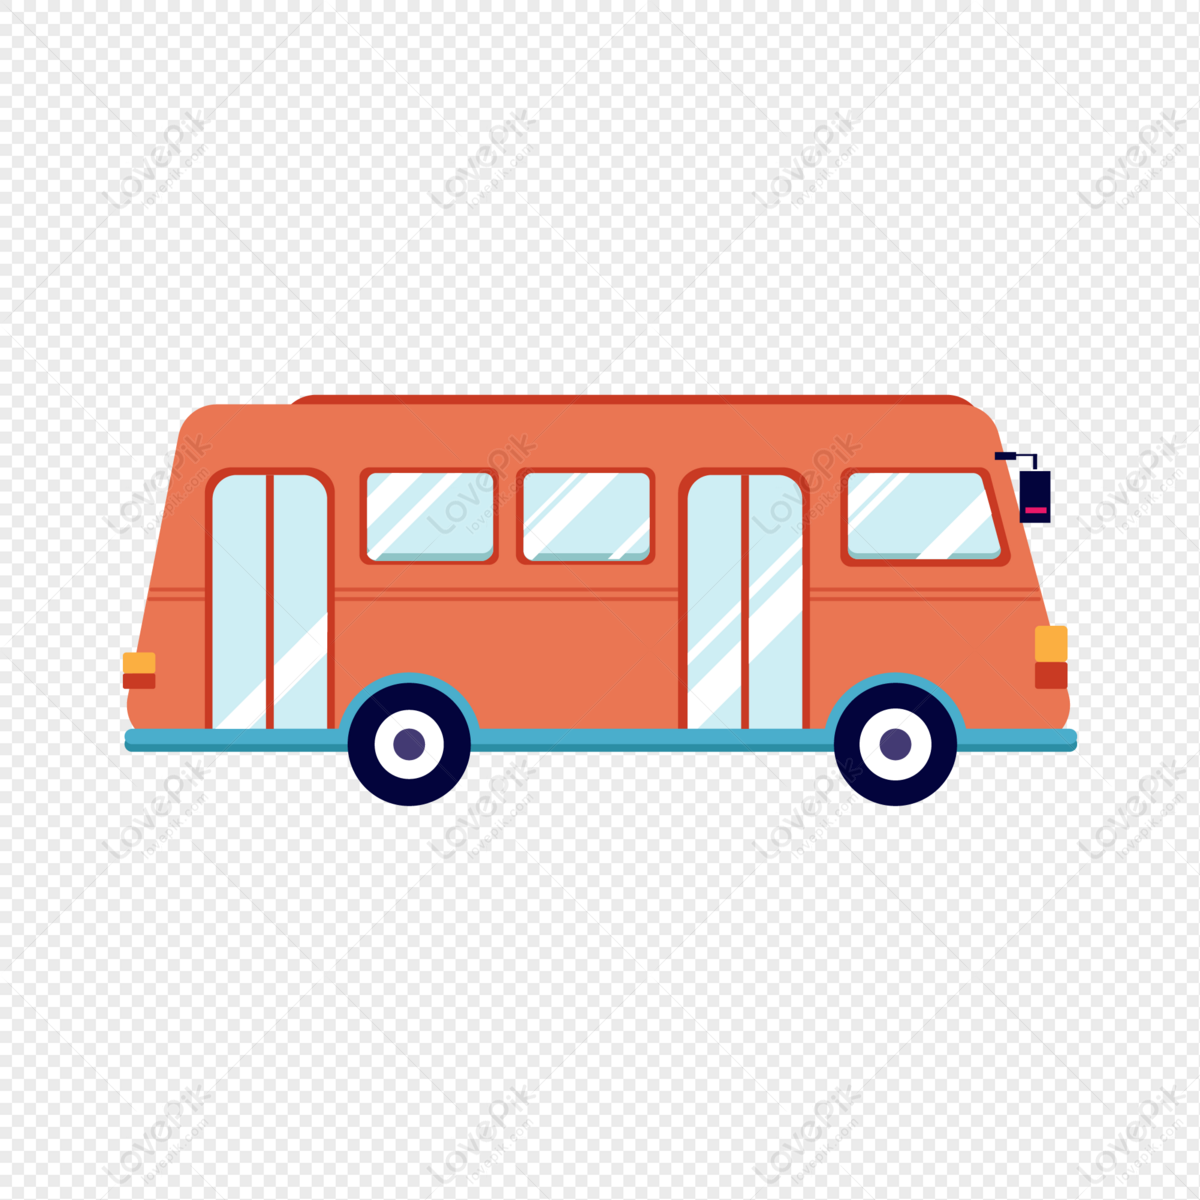 File:Victoria bus logo.svg - Wikipedia